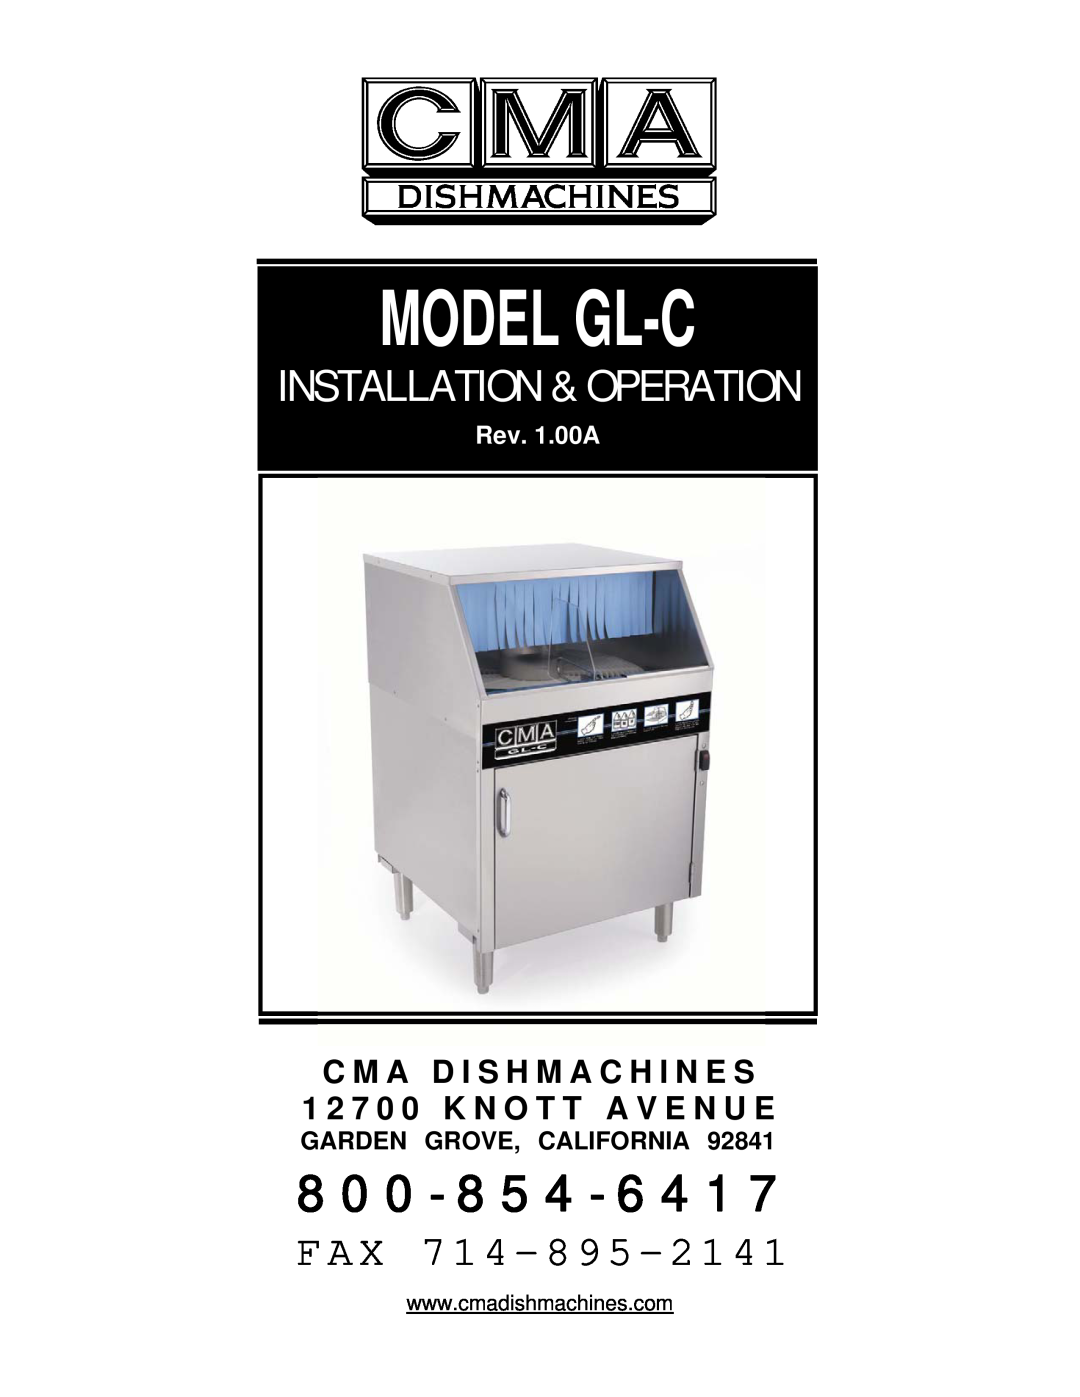 CMA Dishmachines MODEL GL-C manual C M A D I S H M A C H I N E S, 1 2 7 0 0 K N O T T A V E N U E, Model Gl-C, 8 0 0, Fax 